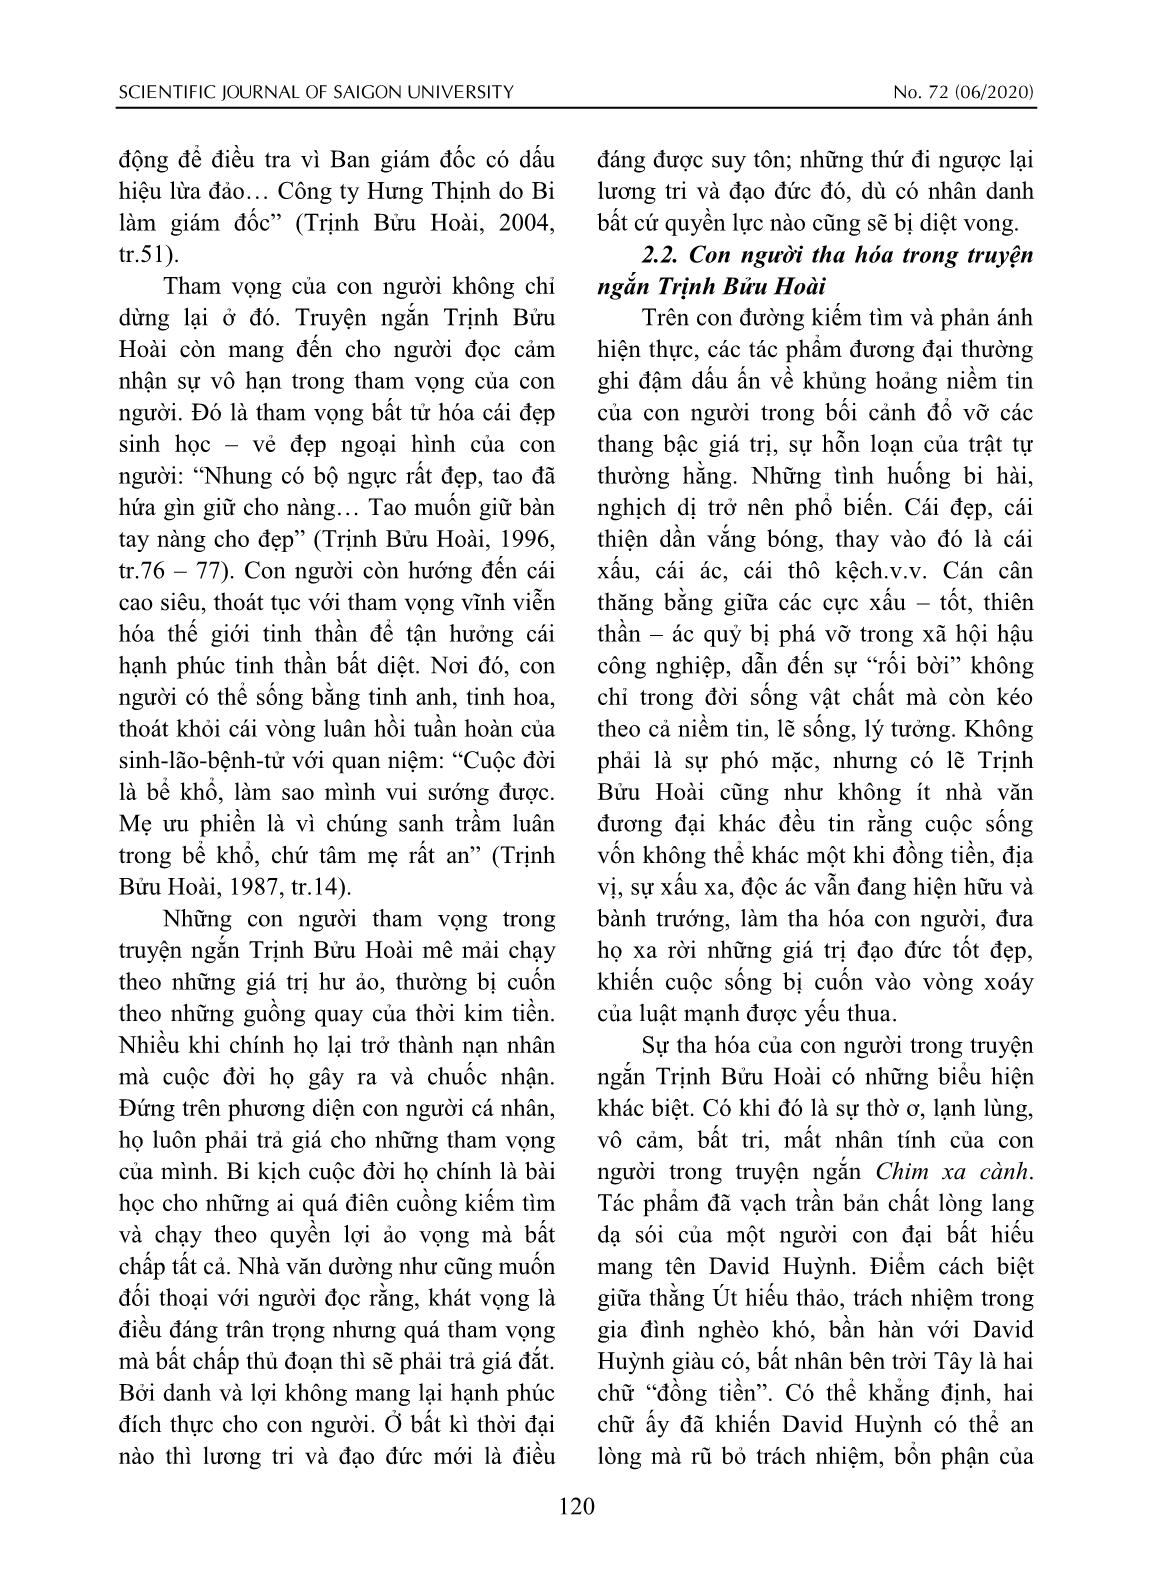 Con người Nam Bộ trong truyện ngắn Trịnh Bửu Hoài trang 3